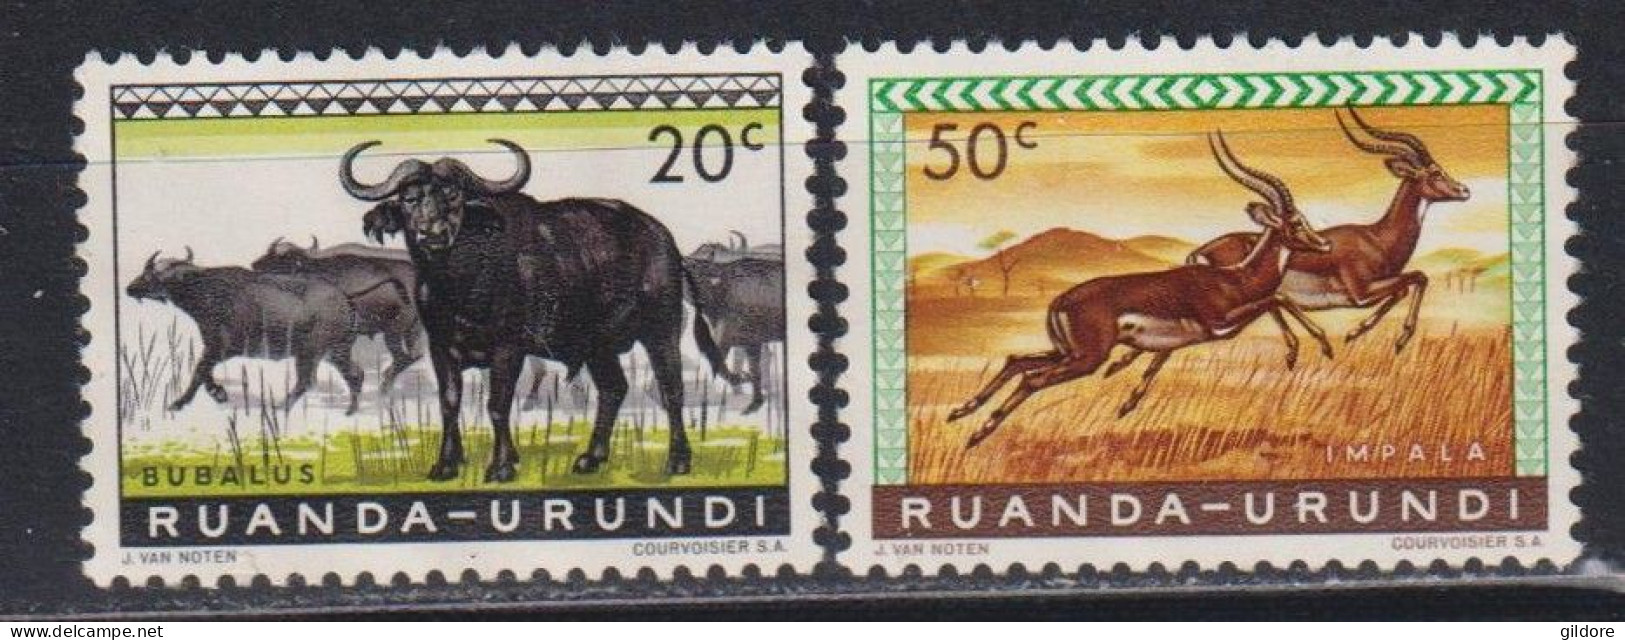 RUANDA URUNDI 1962 - 2 STAMP MNH - Ungebraucht